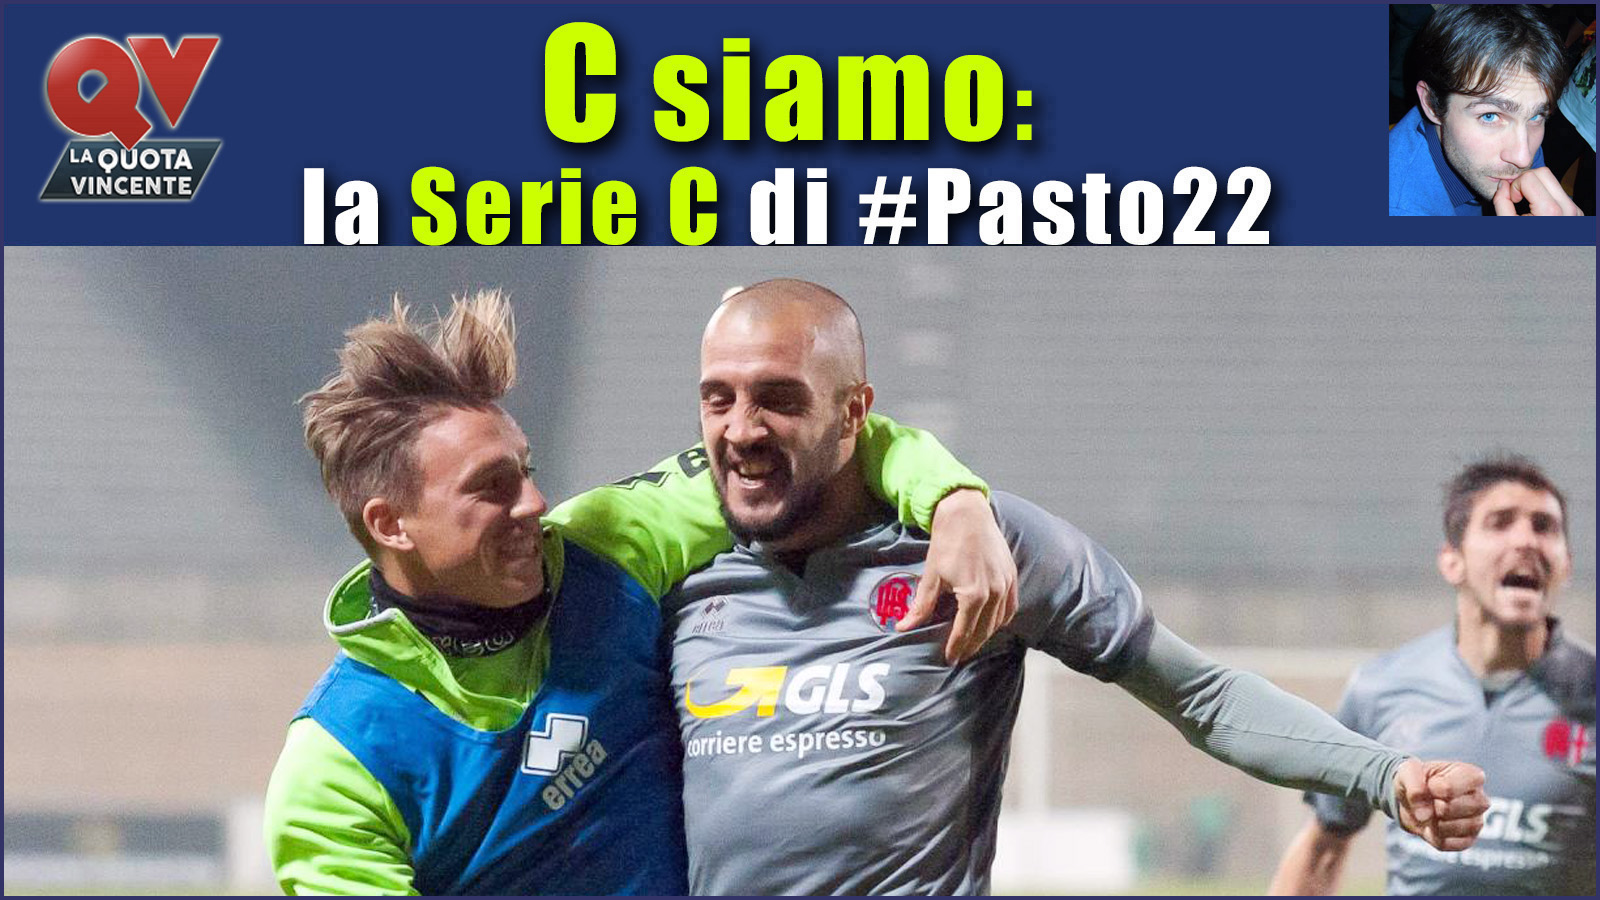 Pronostici Serie C domenica 3 dicembre: #Csiamo, il blog di #Pasto22